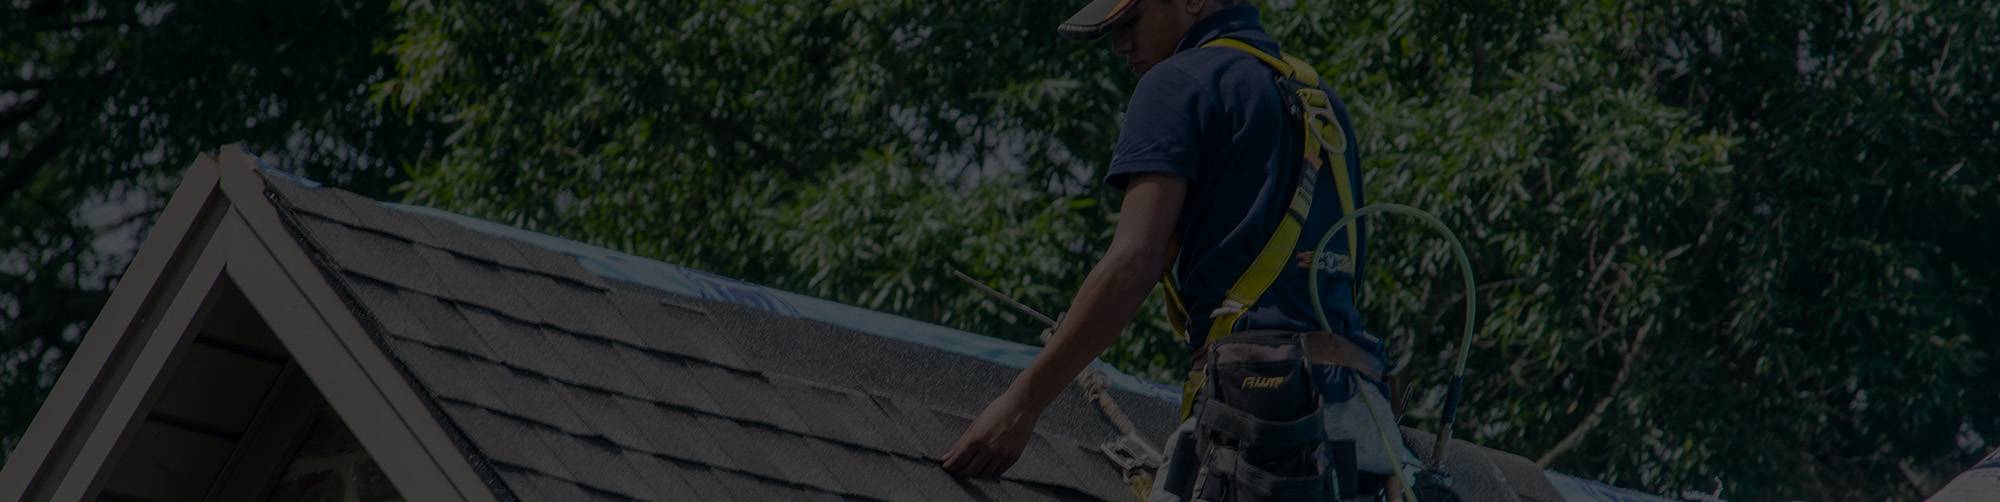 Roof Replacement Contractors in Wisconsin